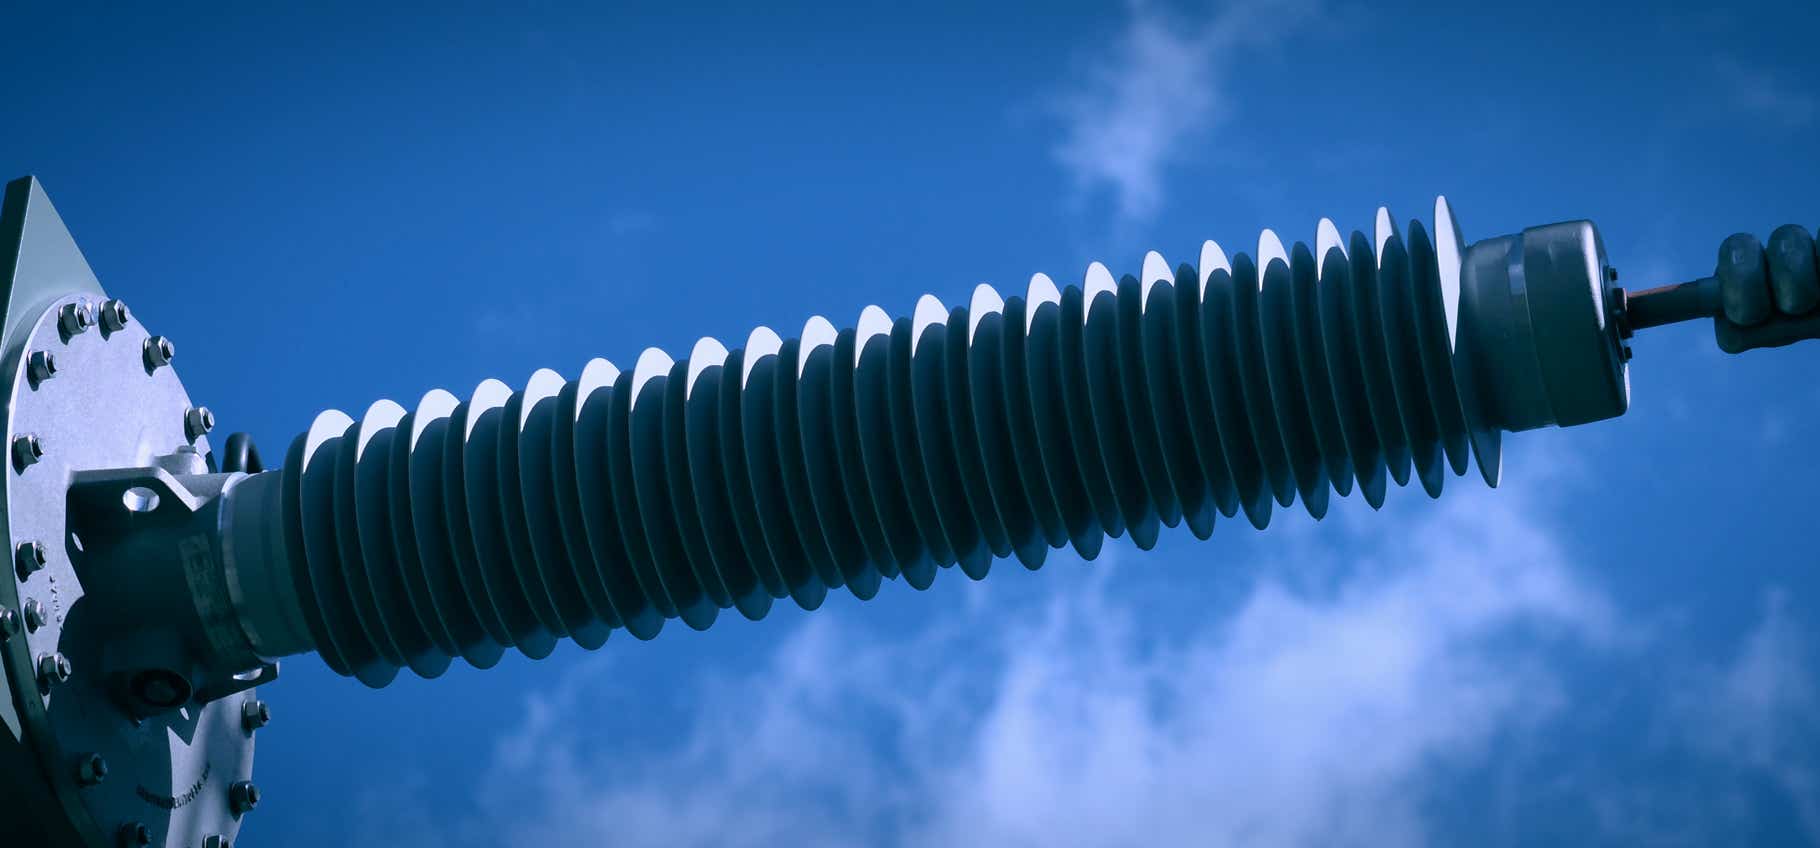 Foto Hochspannungsisolator, Zuleitung Oel-Transformator Umspannwerk von Amprion, blauer Himmel